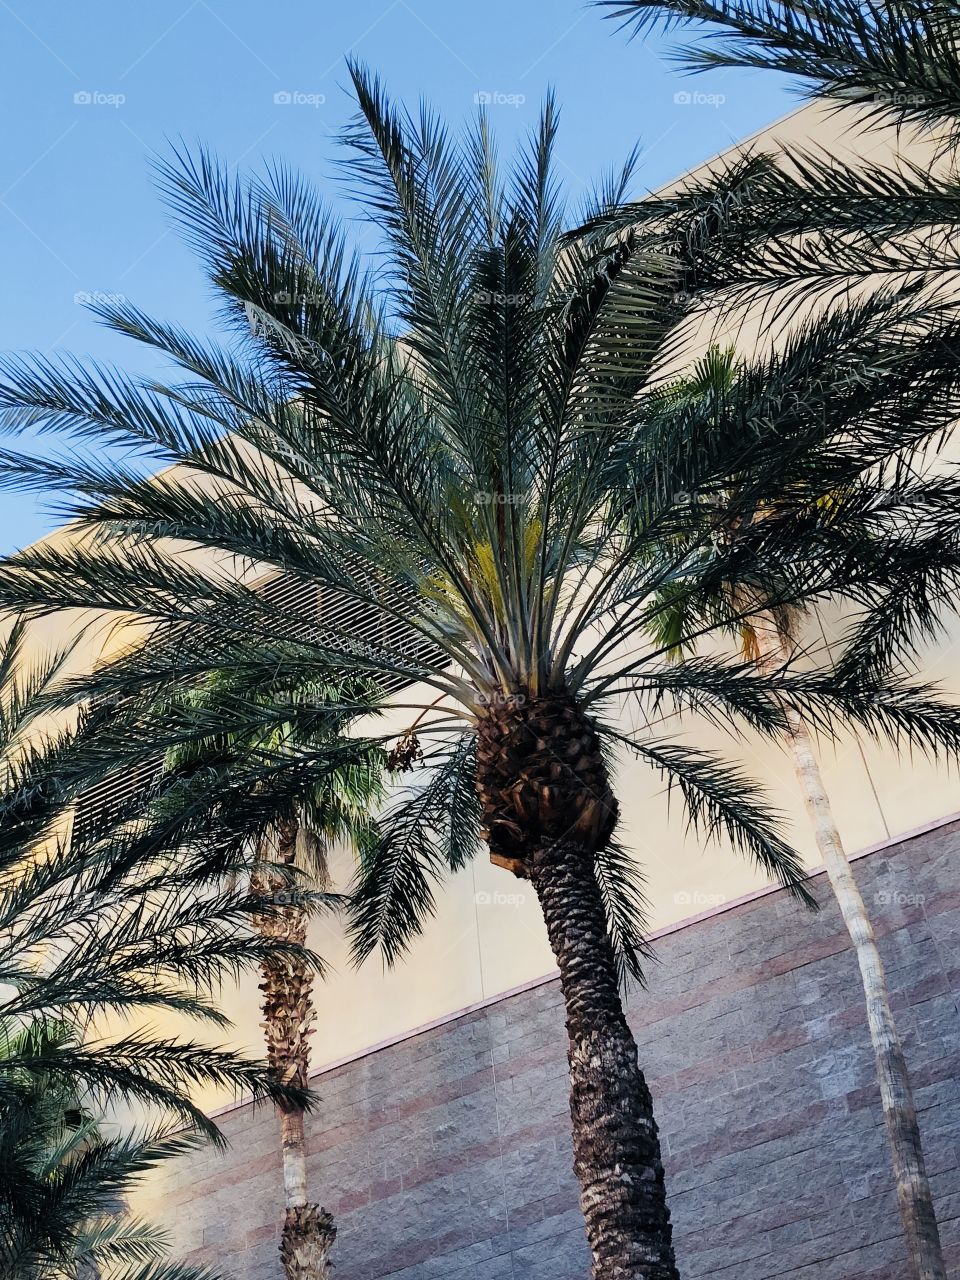 Palms in the Desert